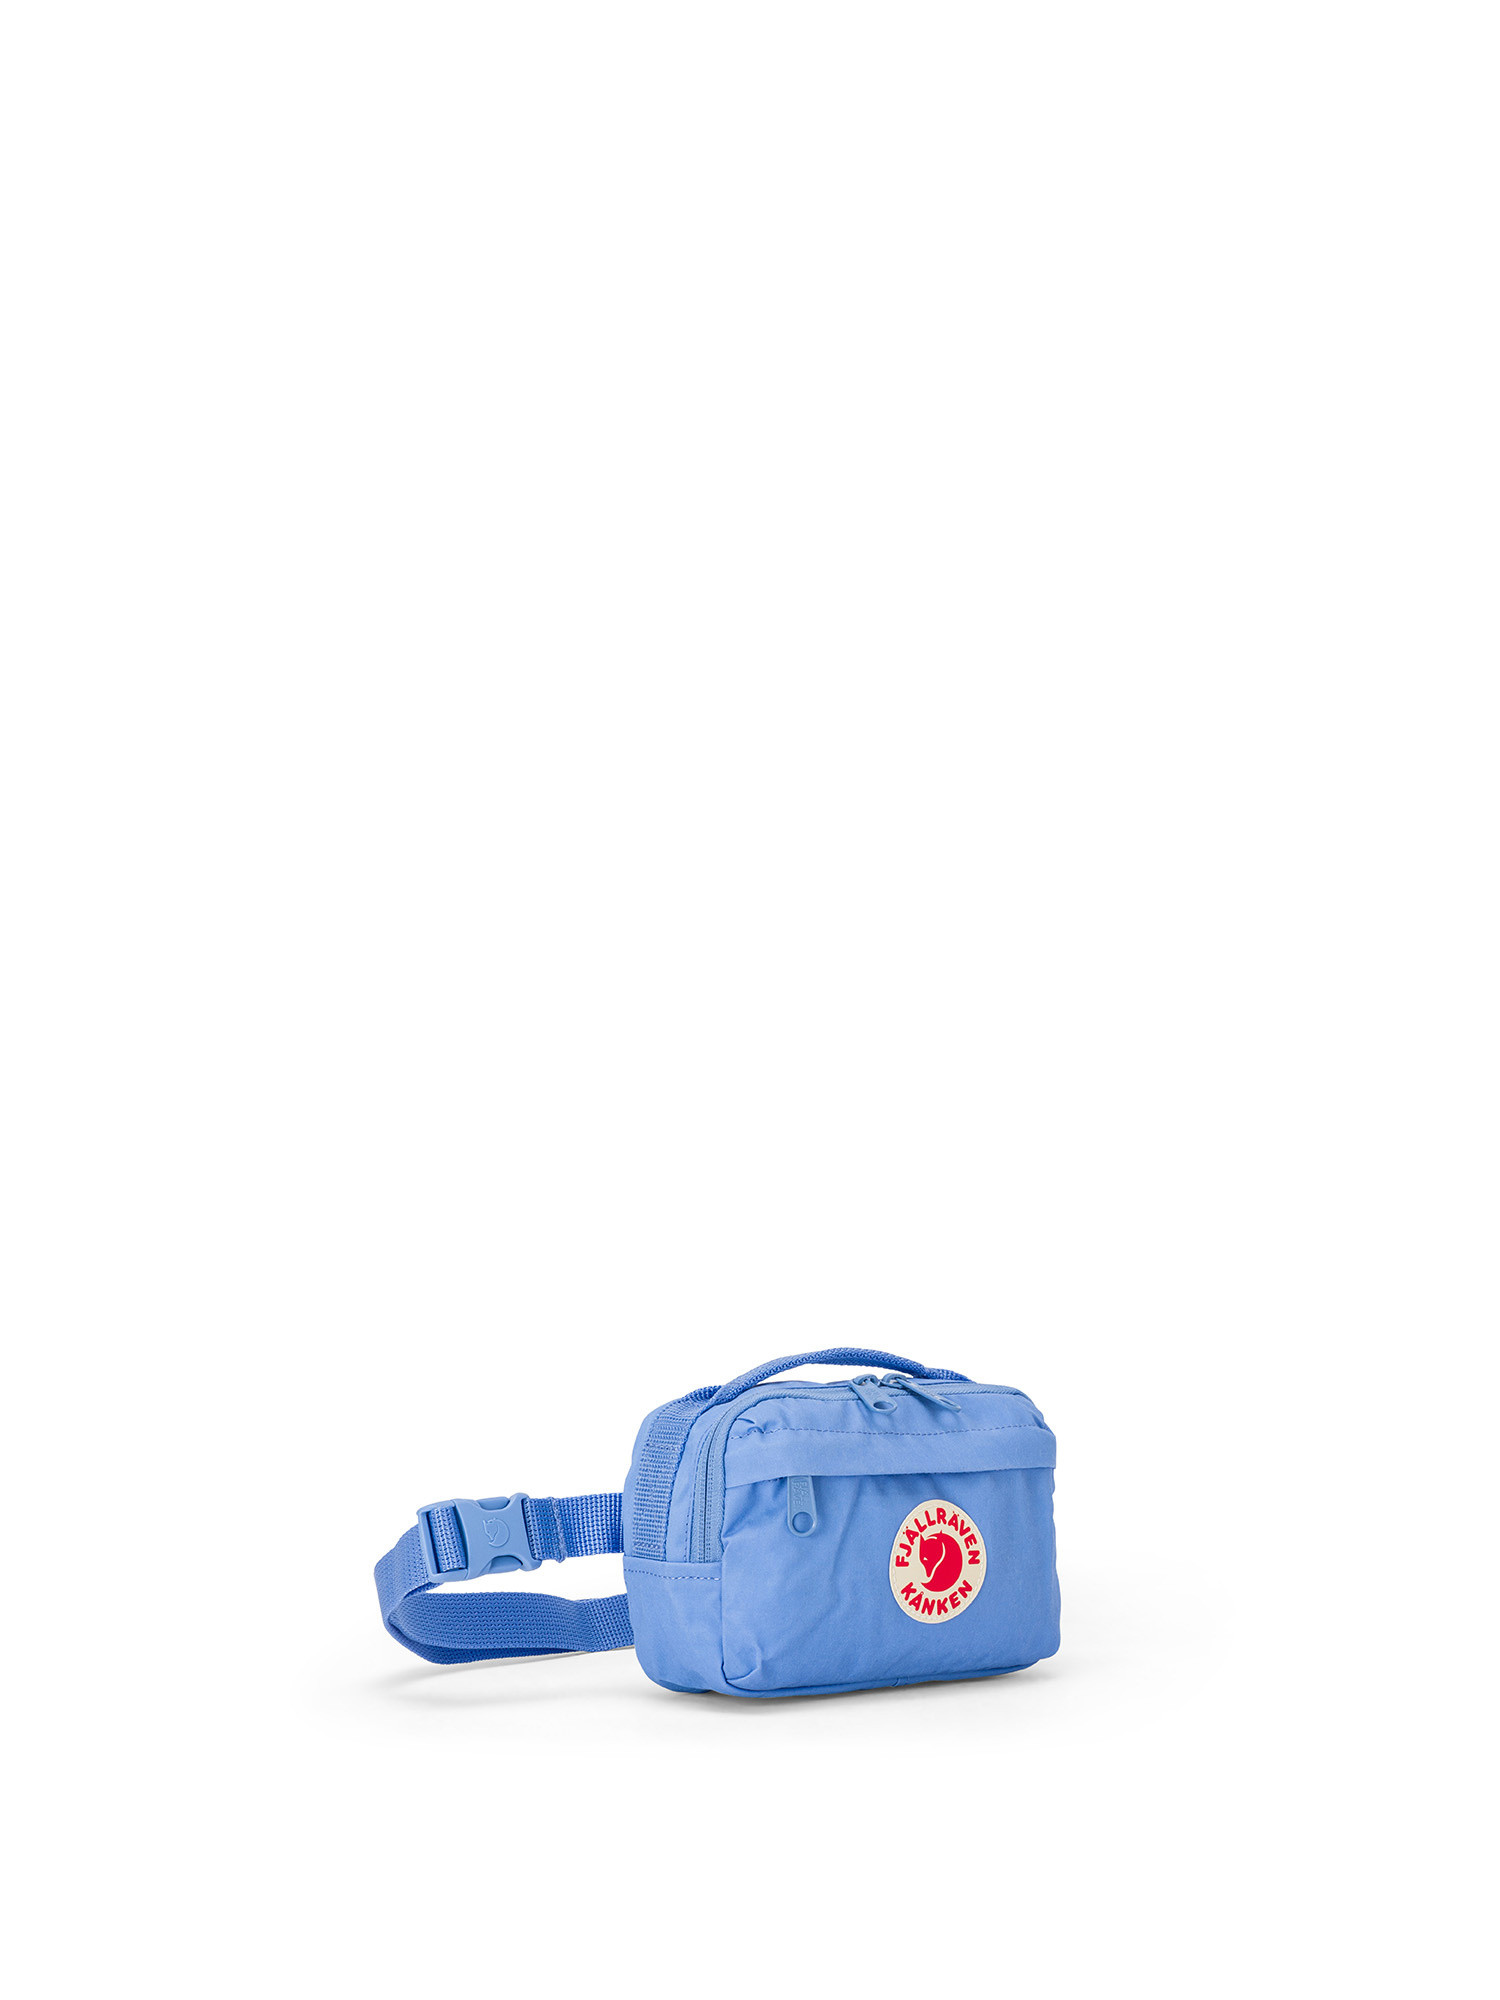 Fjallraven - Kånken hip bag, Light Blue, large image number 1